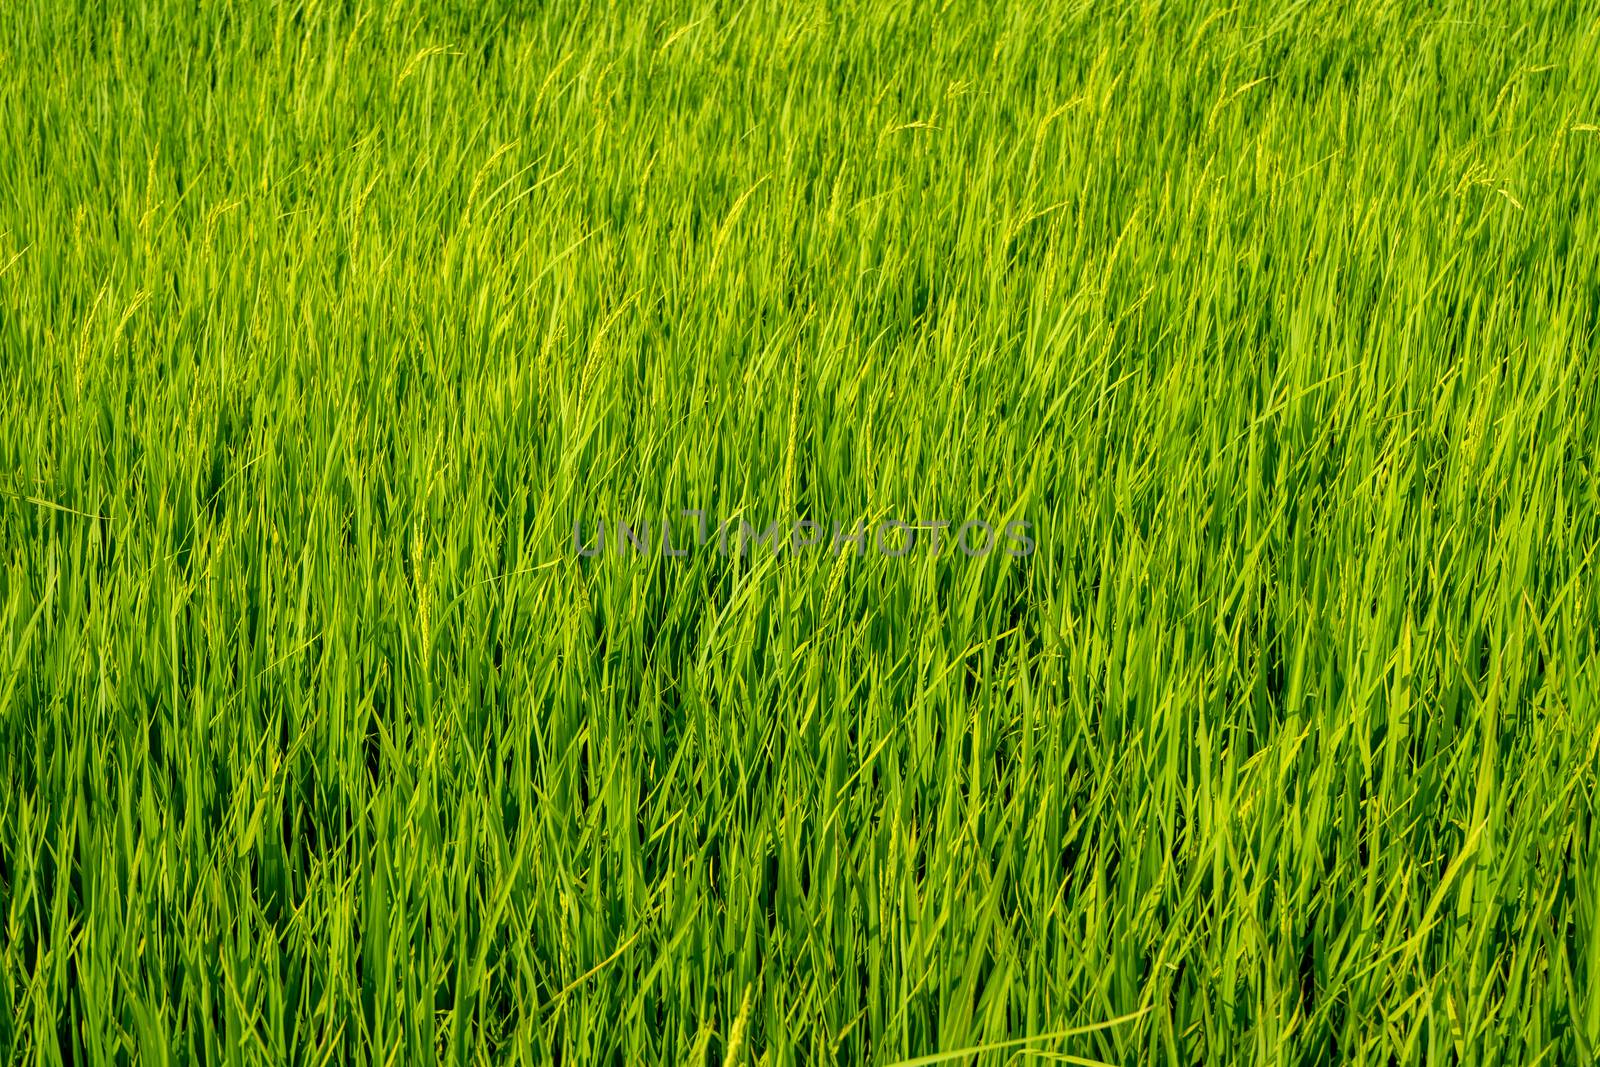 Paddy rice fields  by szefei